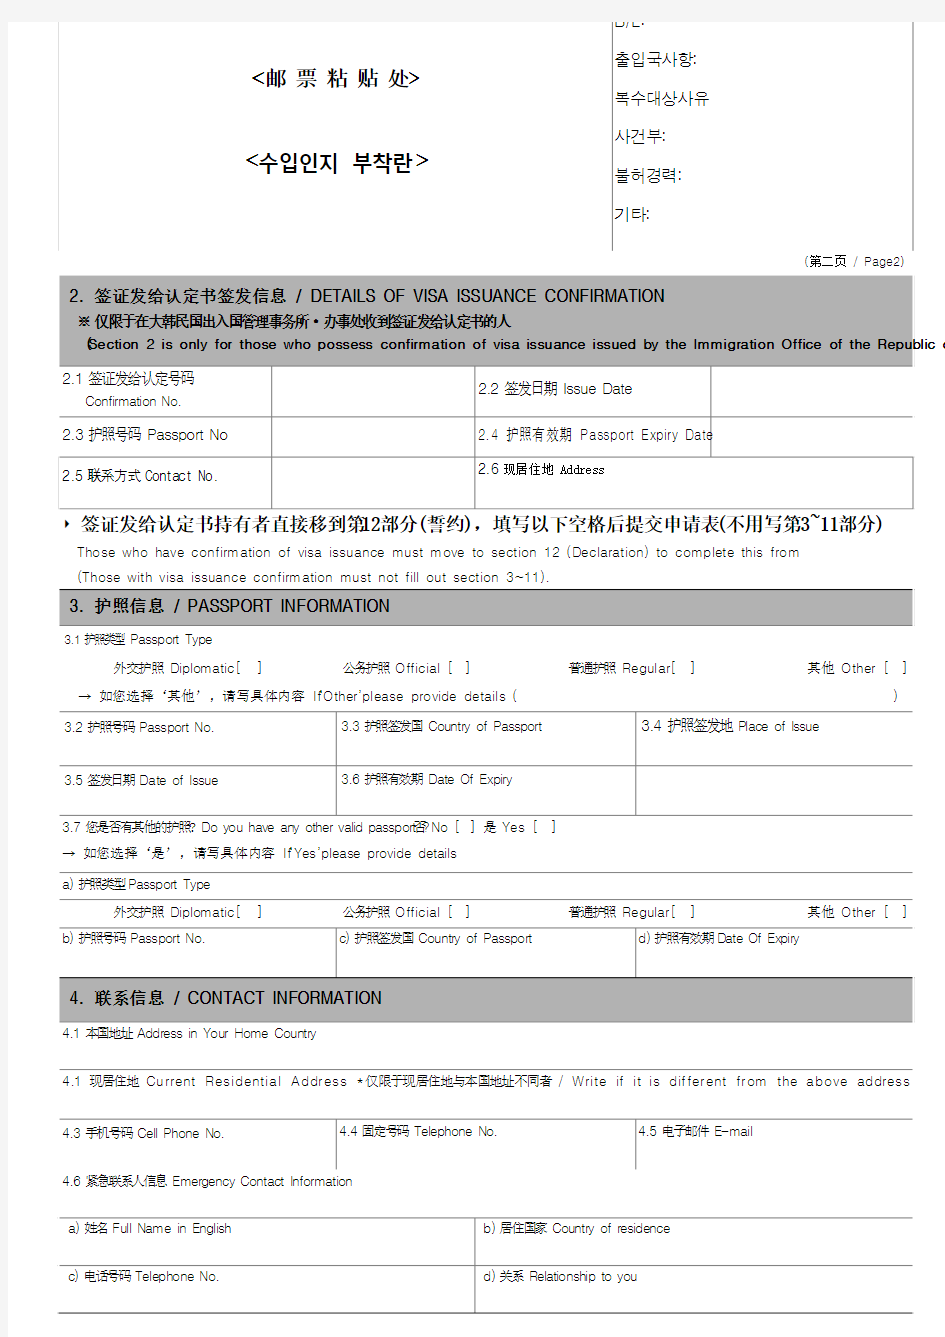 韩国签证申请表 (中英文)